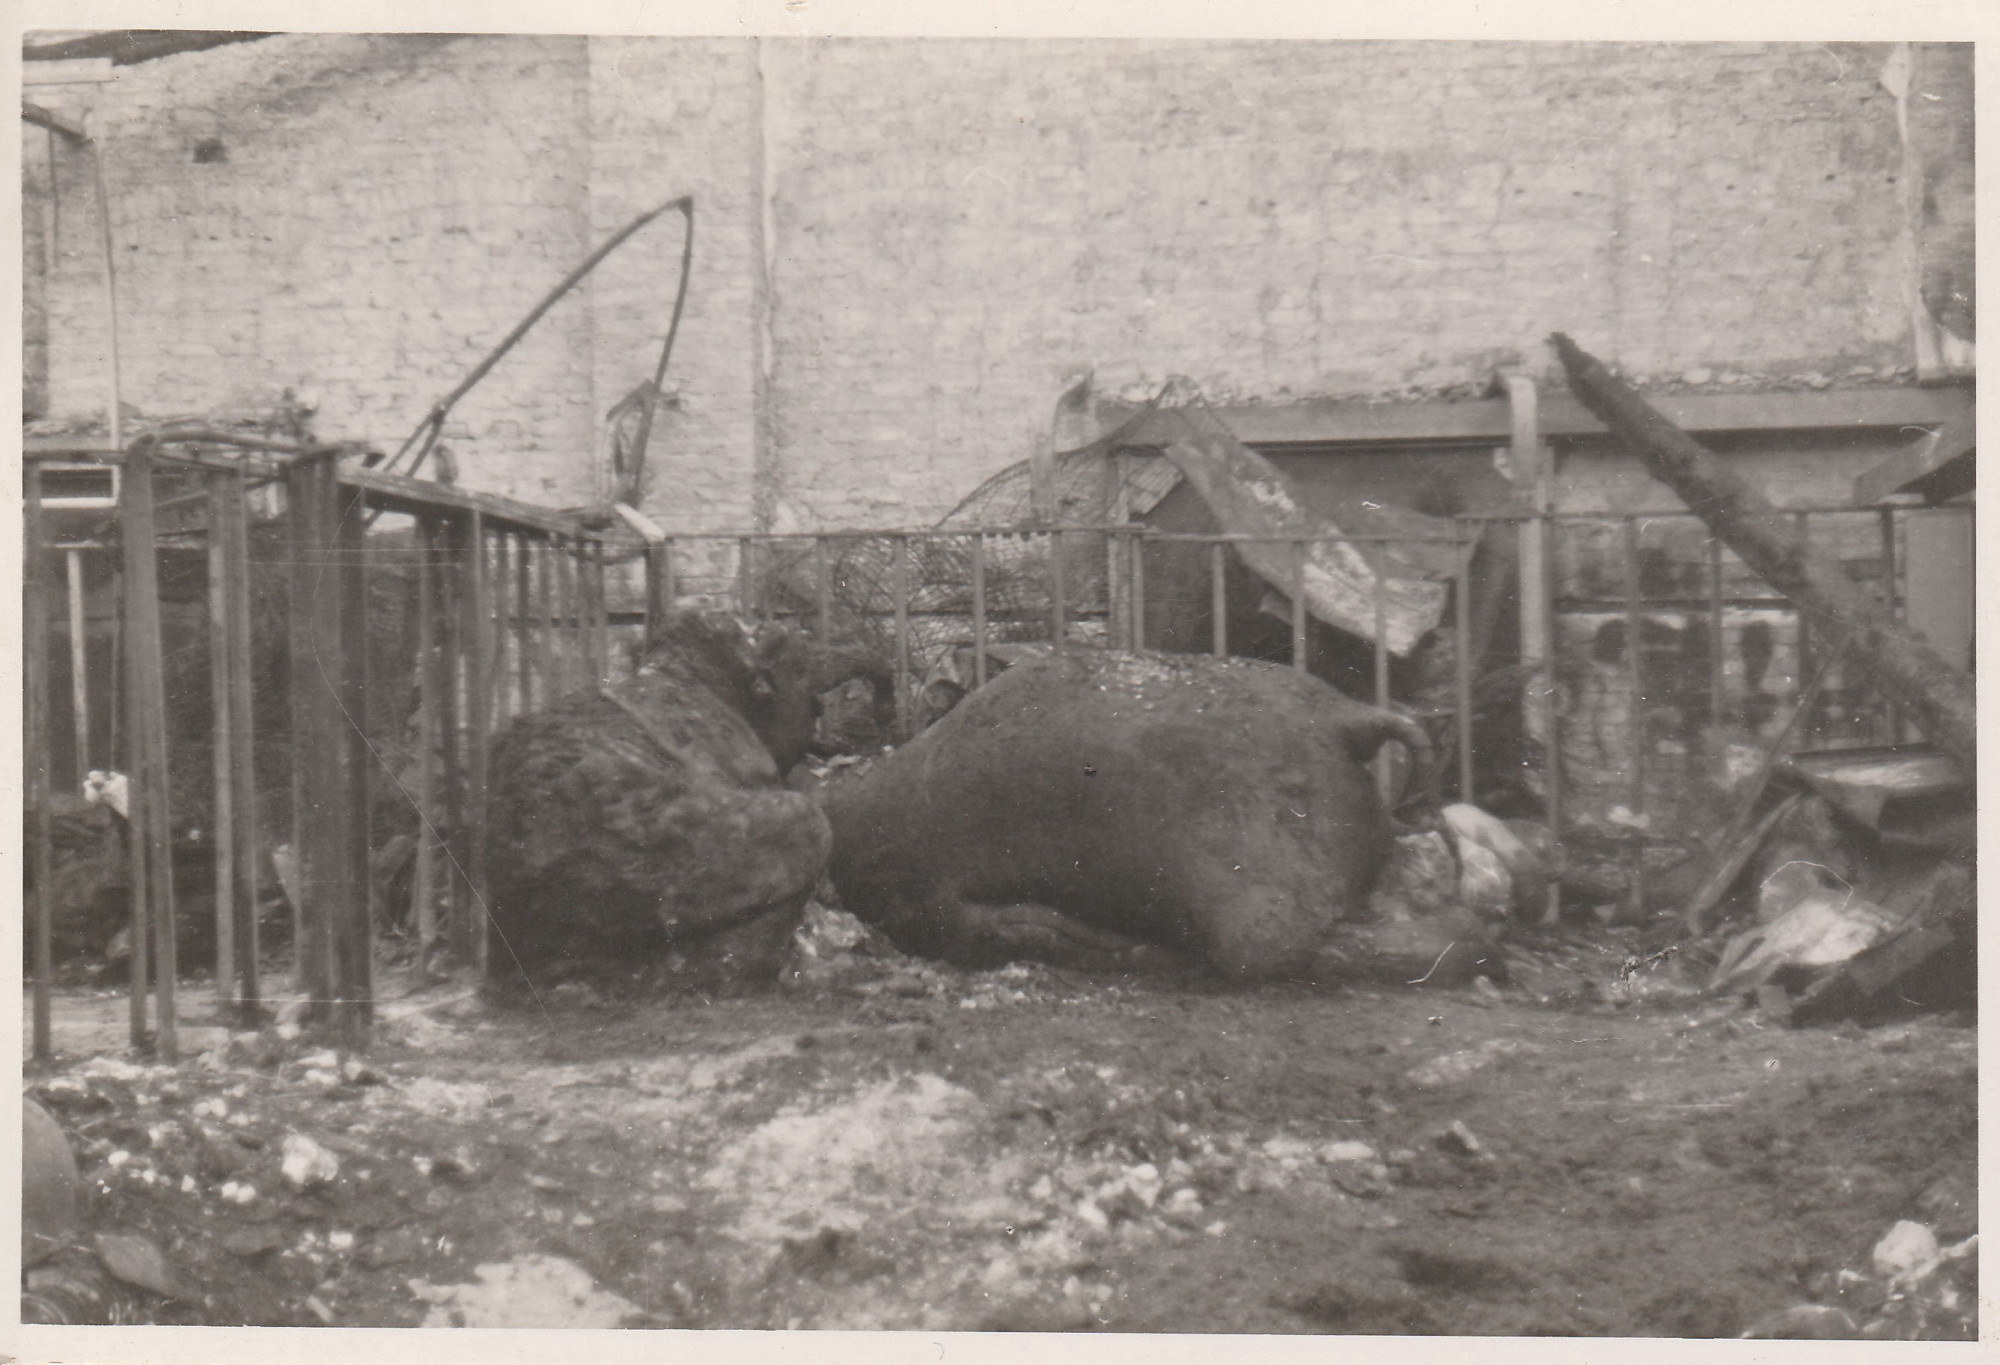 Schwarz-weiß Foto: seitlich liegender, abgemagerter Elefant zwischen Trümmern.